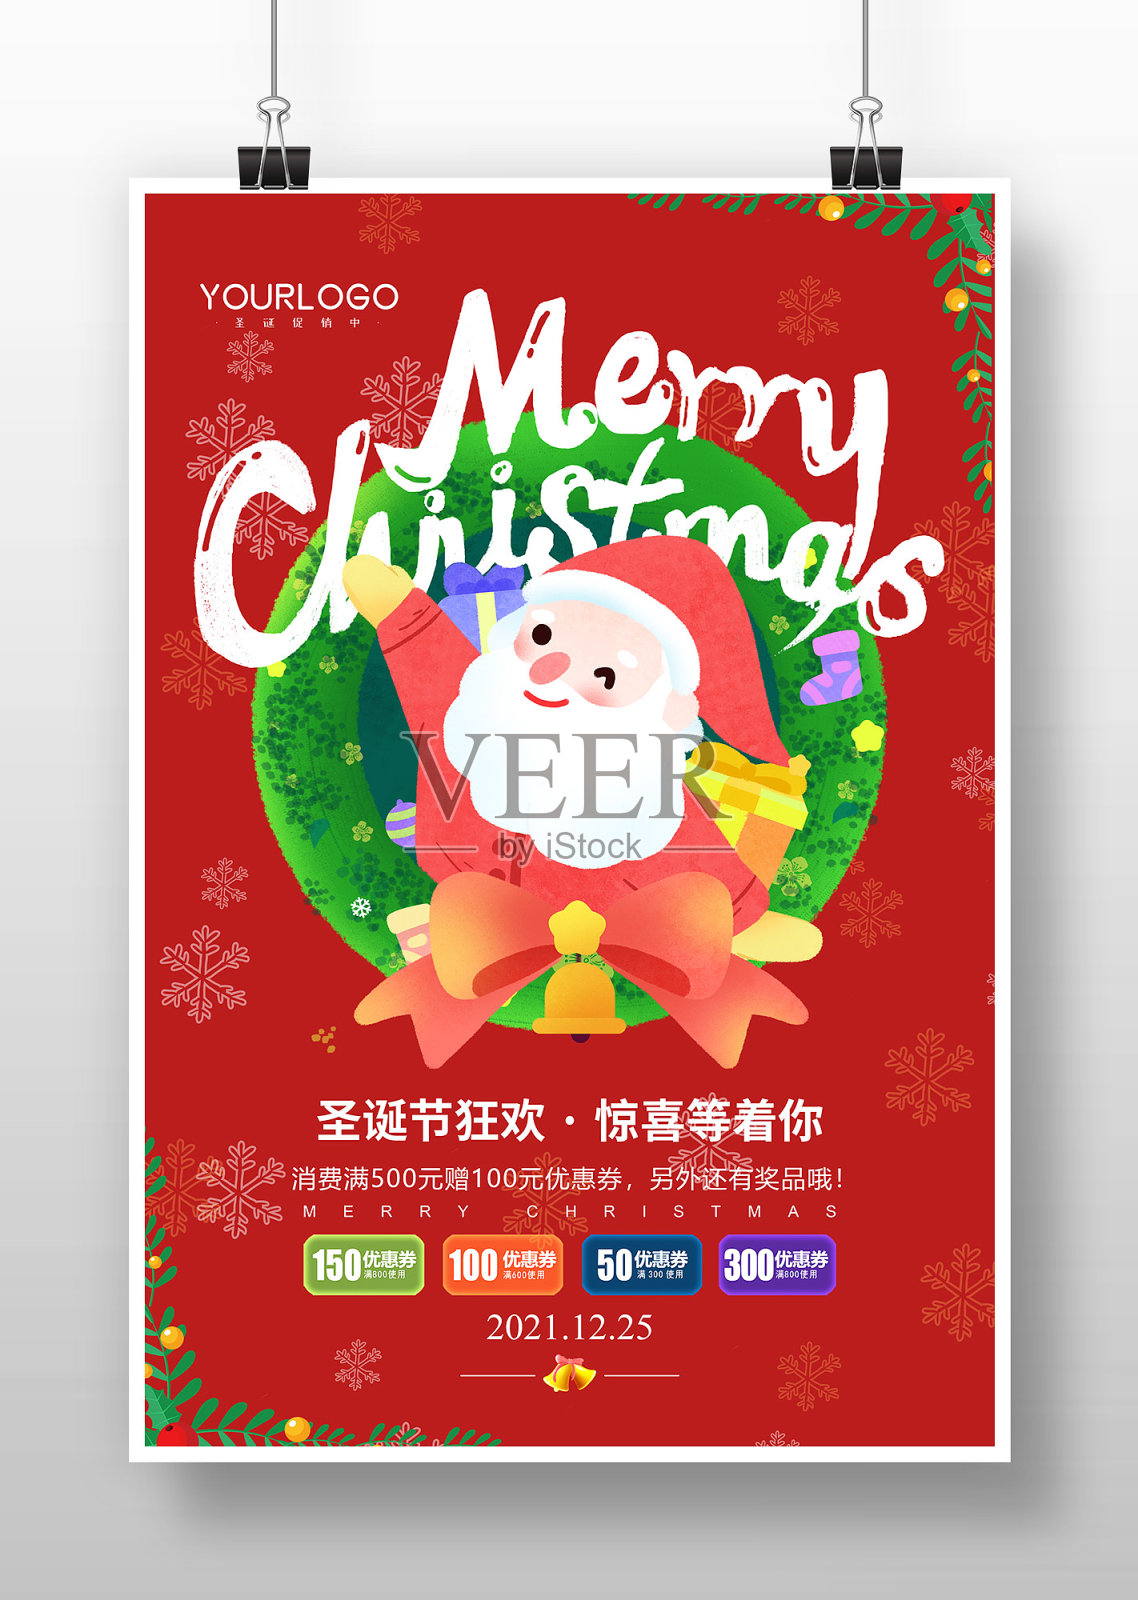 红色创意圣诞节节日海报设计设计模板素材